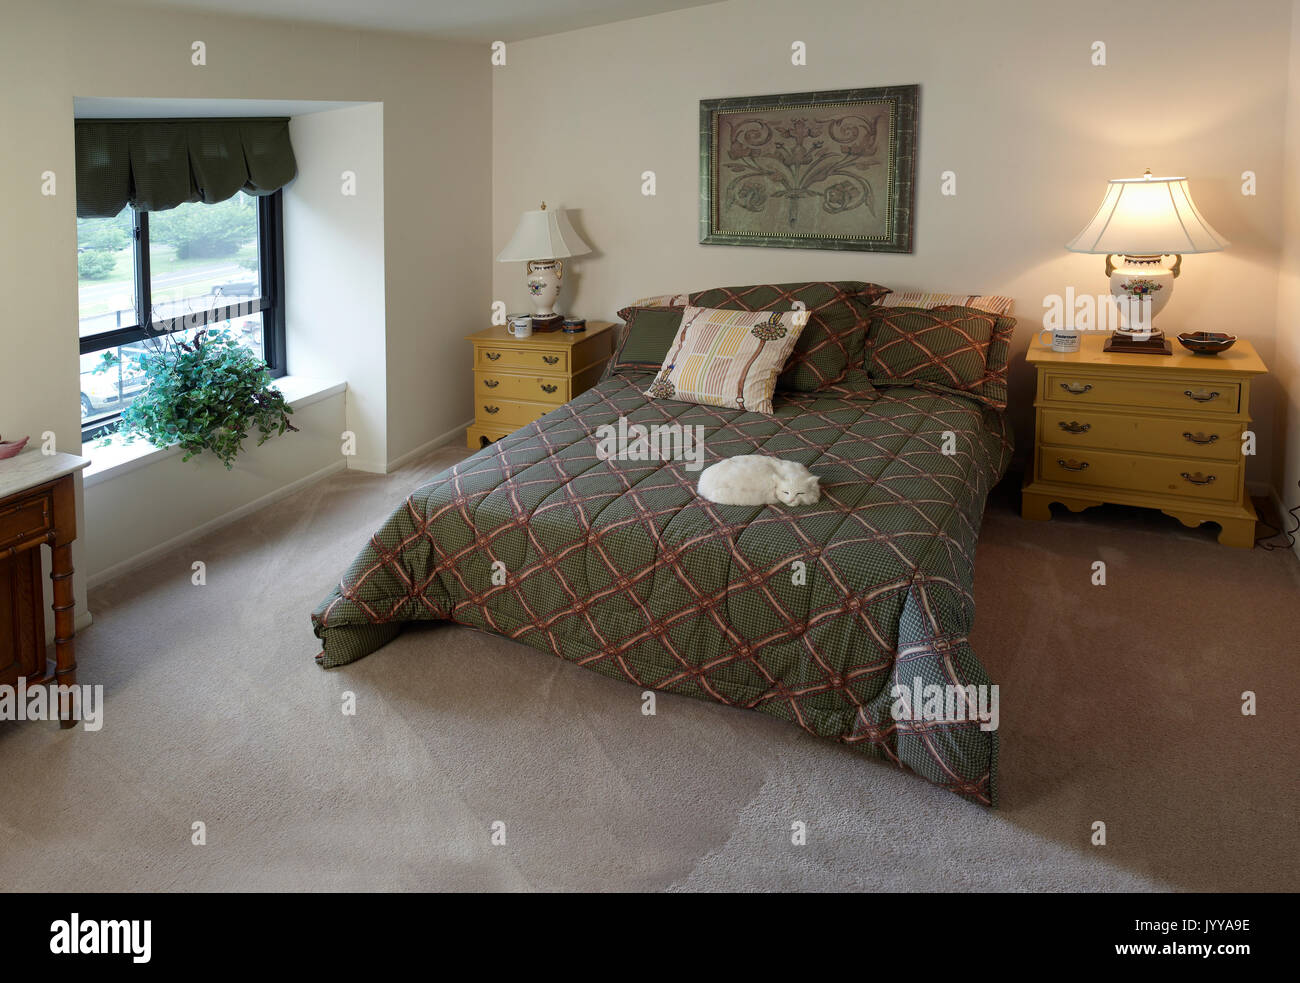 Camera da letto residenziale con gatto sul letto Foto Stock